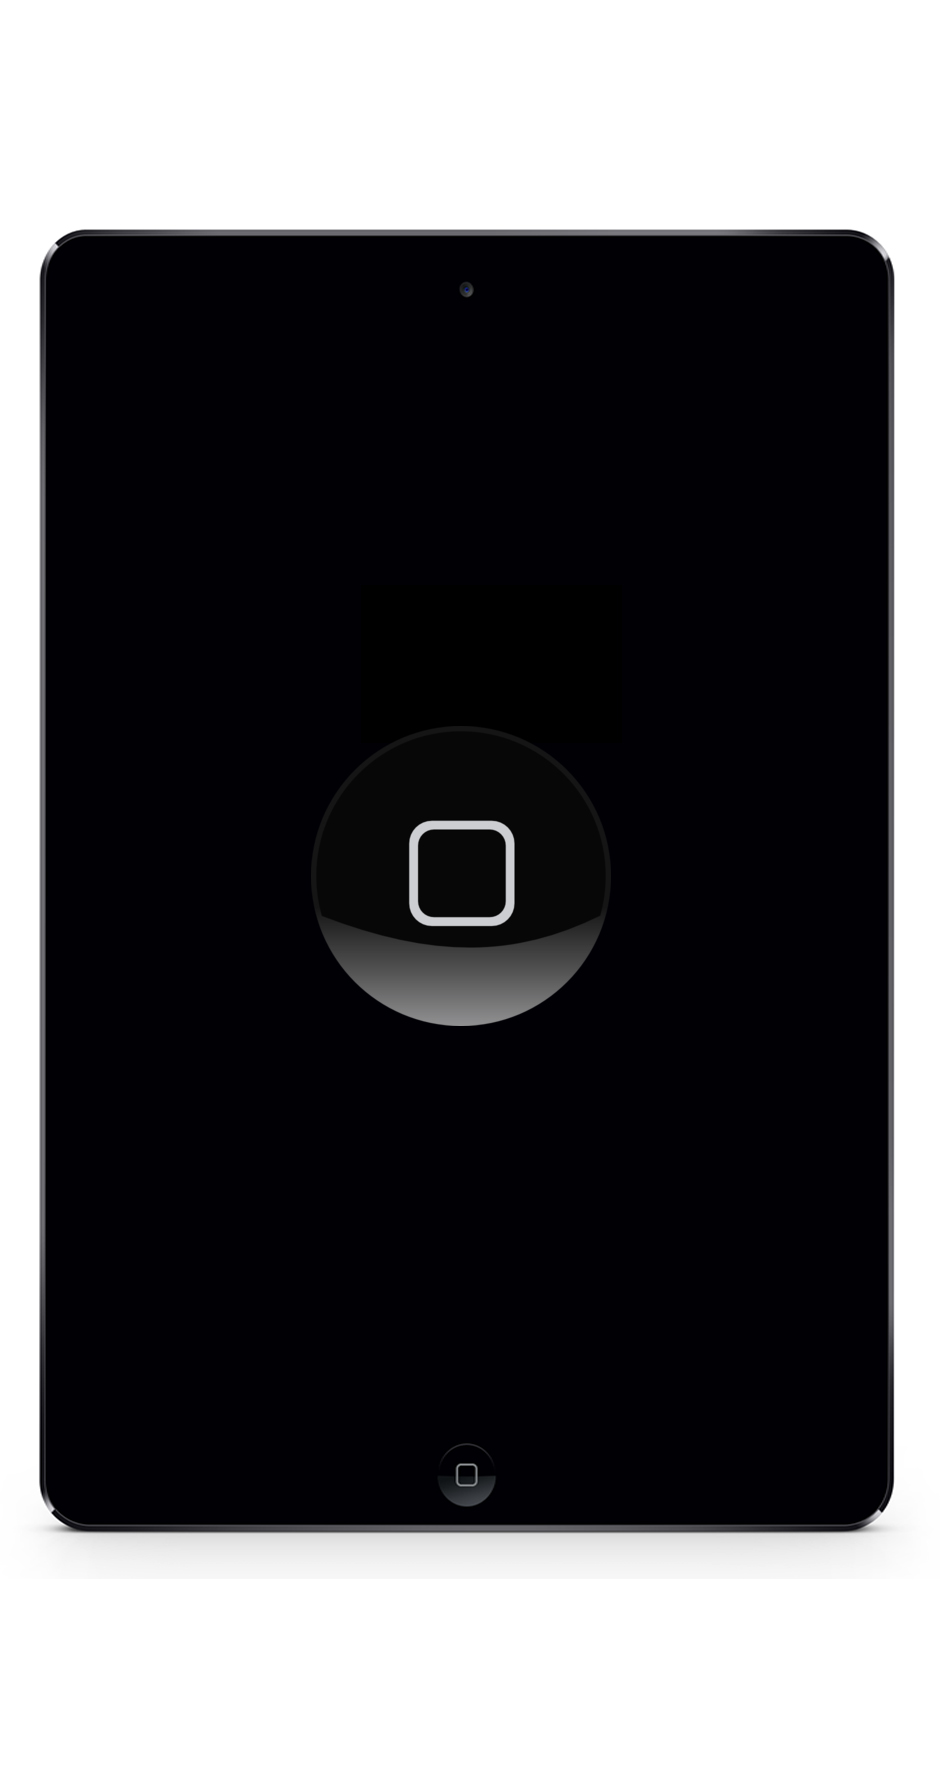 iPad Pro Reparatur Berlin Home-button